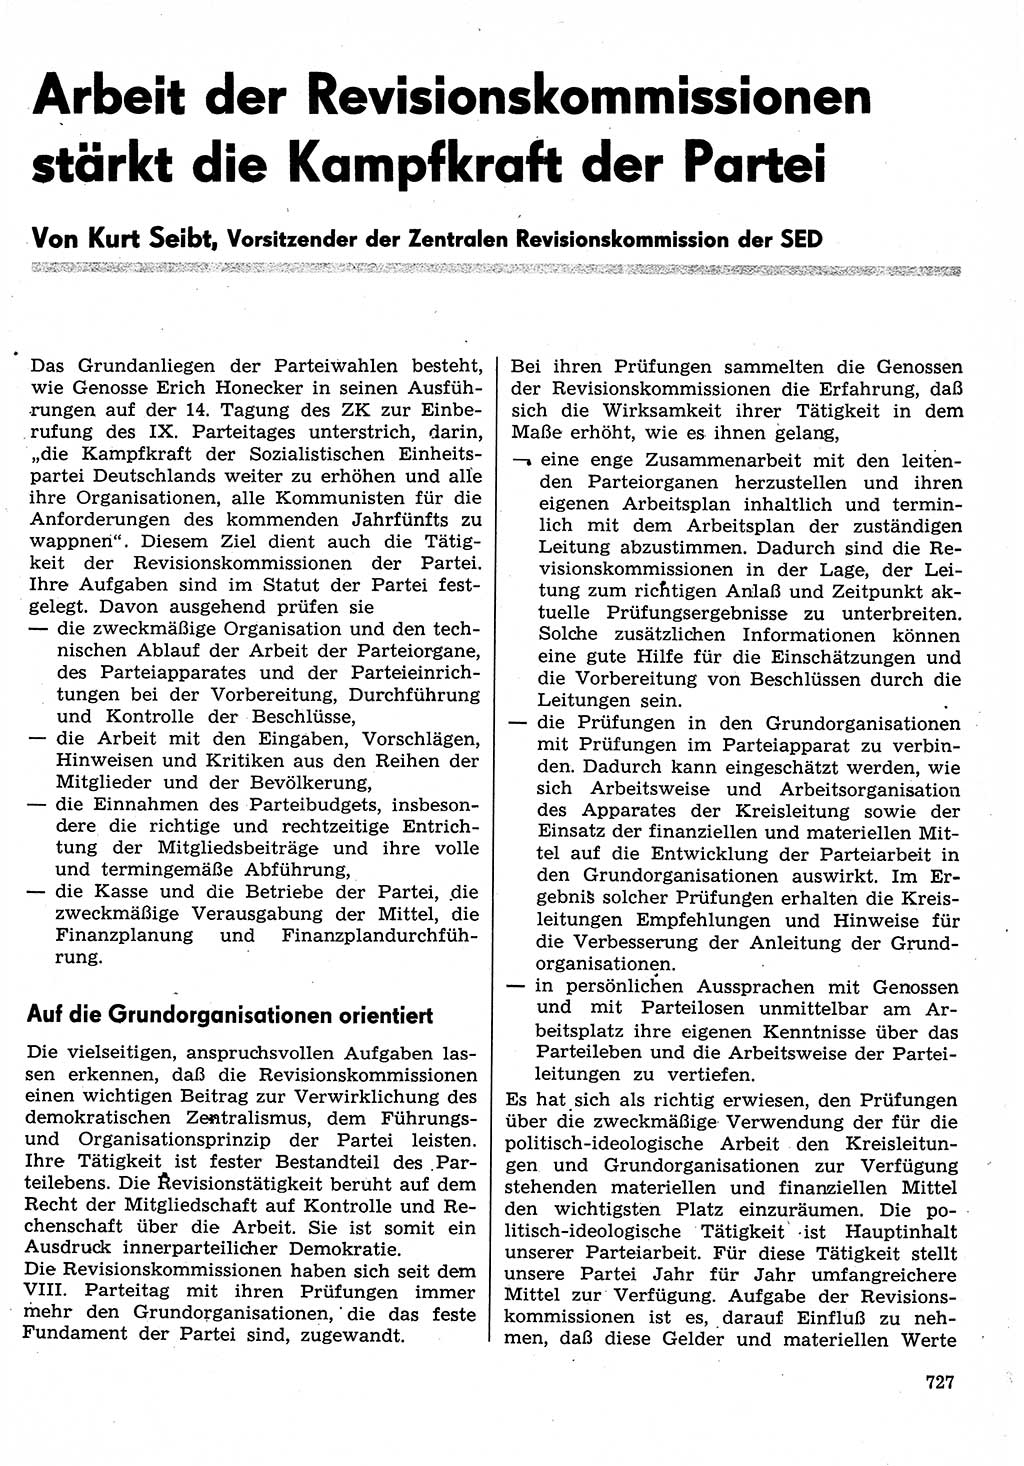 Neuer Weg (NW), Organ des Zentralkomitees (ZK) der SED (Sozialistische Einheitspartei Deutschlands) für Fragen des Parteilebens, 30. Jahrgang [Deutsche Demokratische Republik (DDR)] 1975, Seite 727 (NW ZK SED DDR 1975, S. 727)